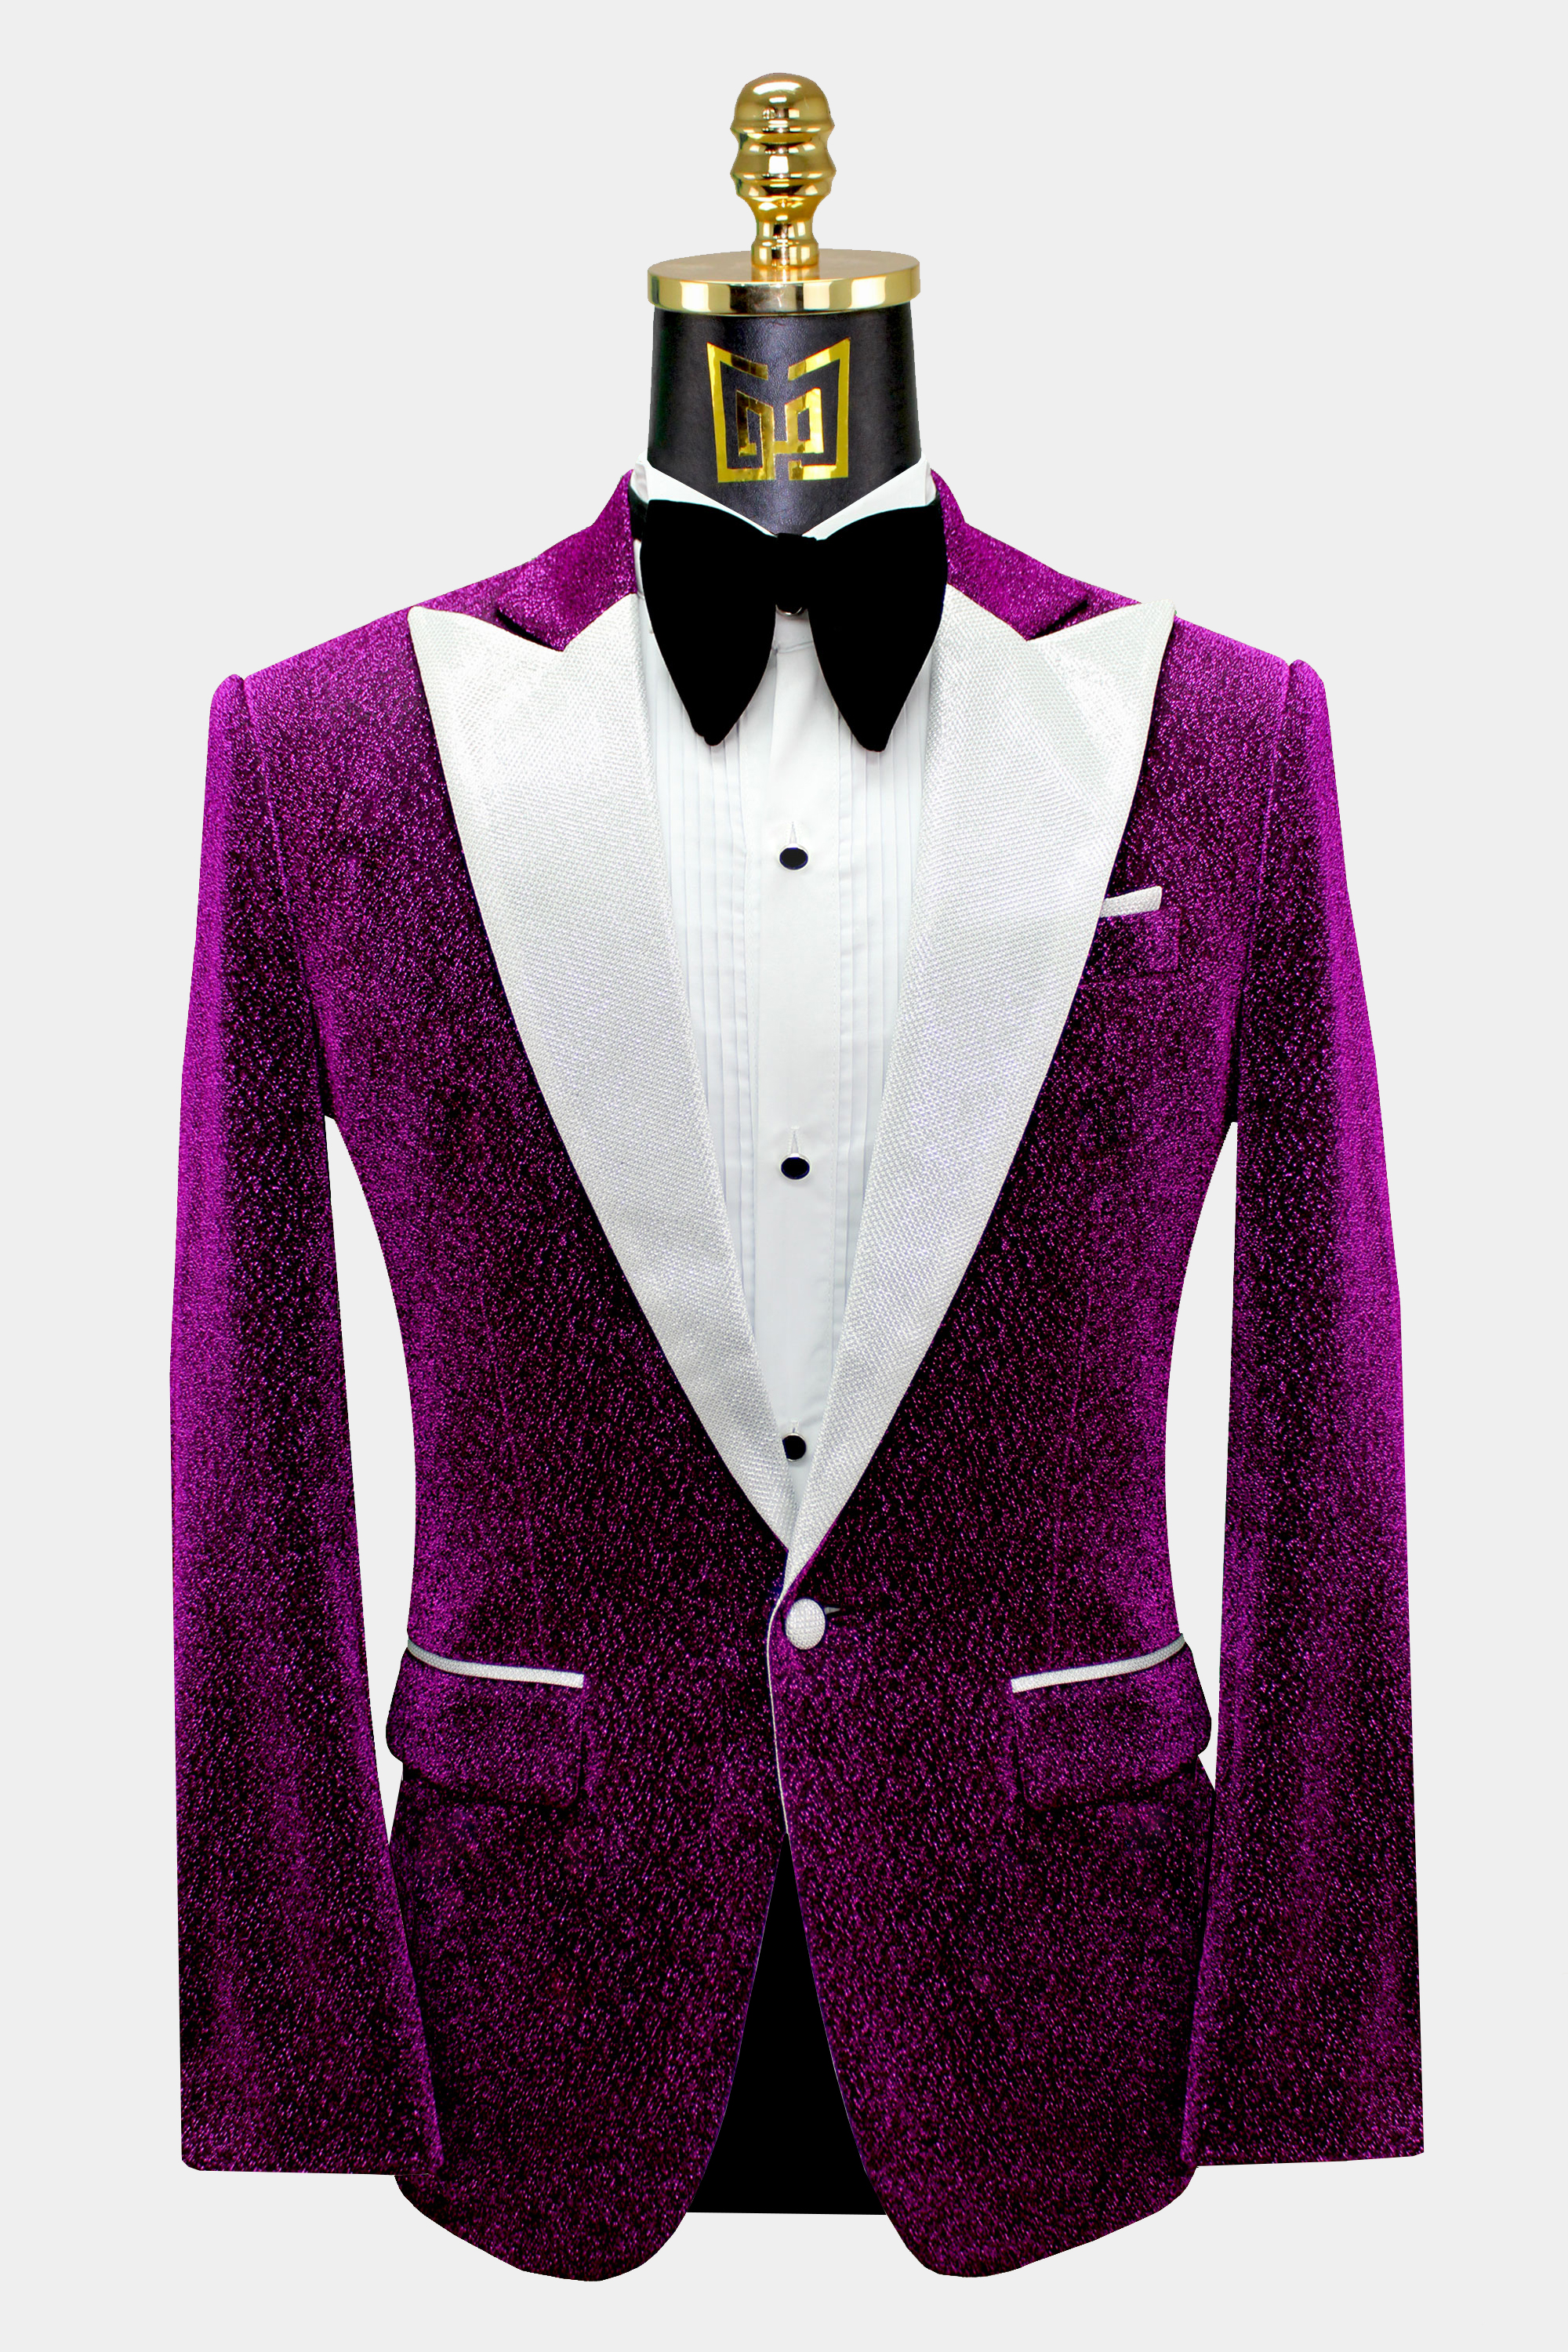 Men's Purple Velvet Jacket Groom Tuxedos Suit Blazers Formal Wedding Prom Suit 